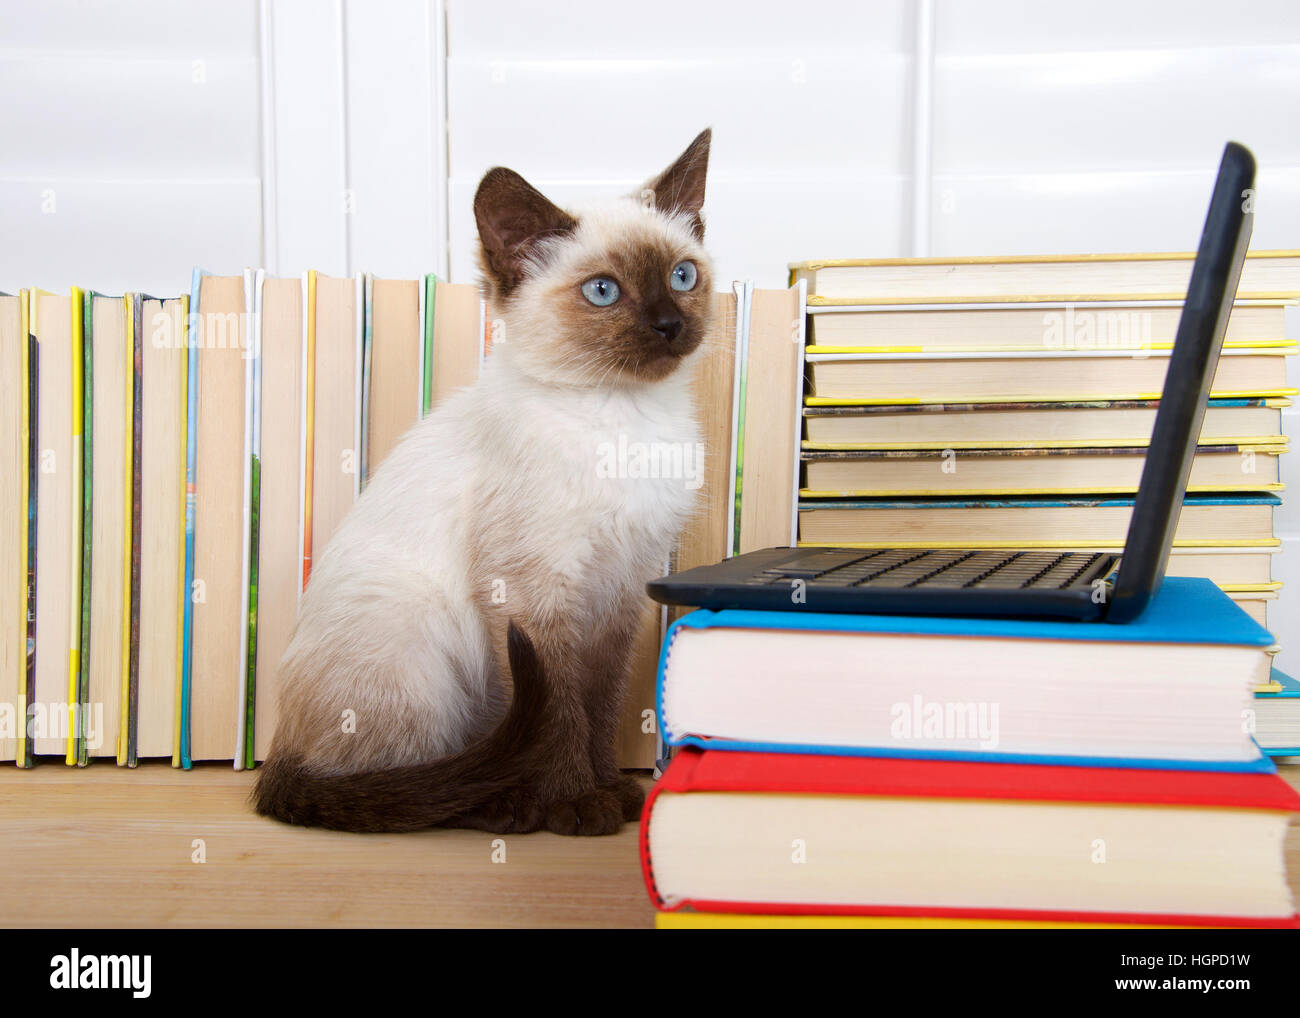 Chaton siamois aux yeux bleus assis à un ordinateur portable miniature empilés sur des livres avec des livres en arrière-plan. Arrêt à droite aux téléspectateurs, comme si e Banque D'Images